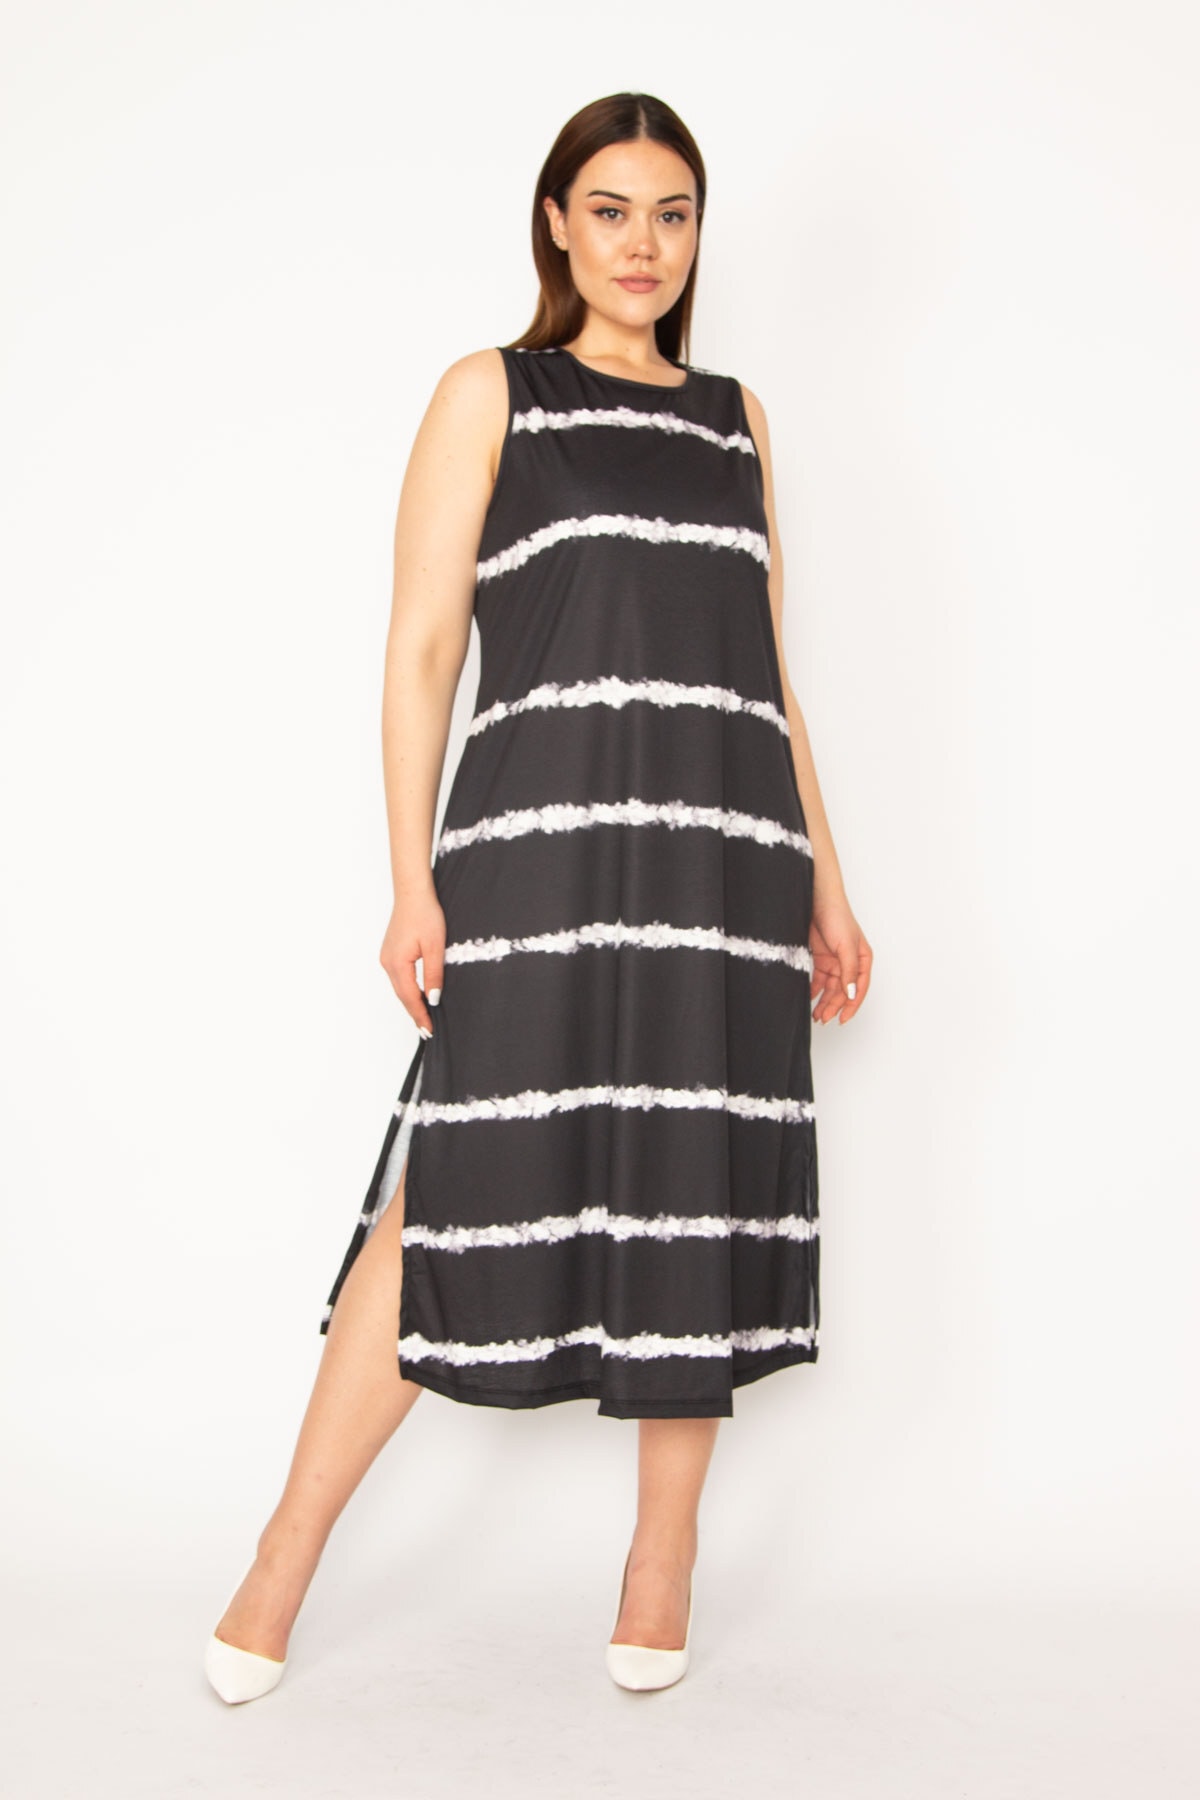 Şans Women's Plus Size Black Tie Dye Striped Long Dress with Side Slits